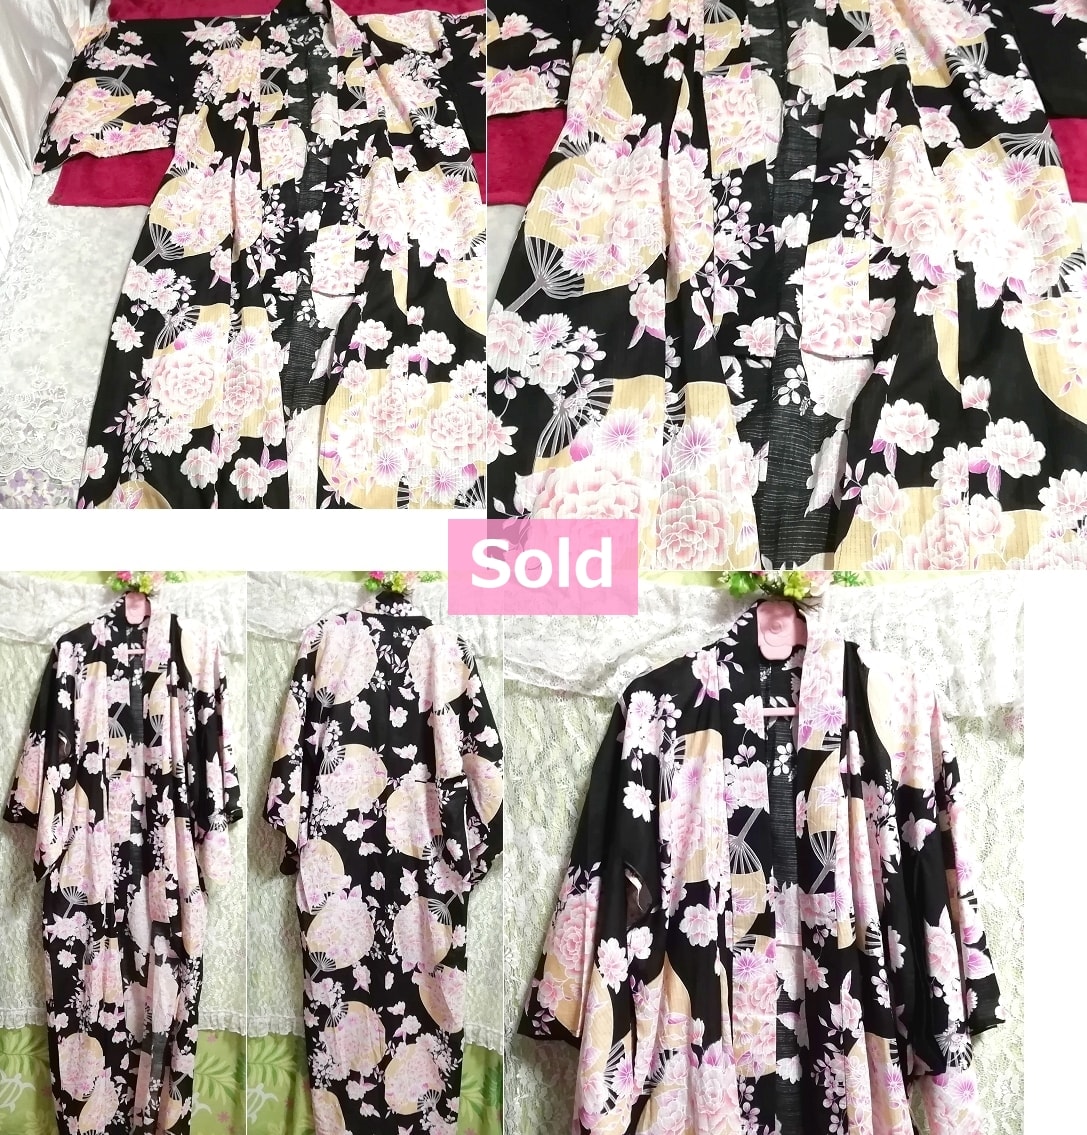 쿠로다 부채 벚꽃 무늬 유카타 일본 옷 기모노 겉옷 검은 사쿠라 꽃 무늬 유카타 일본 옷 기모노